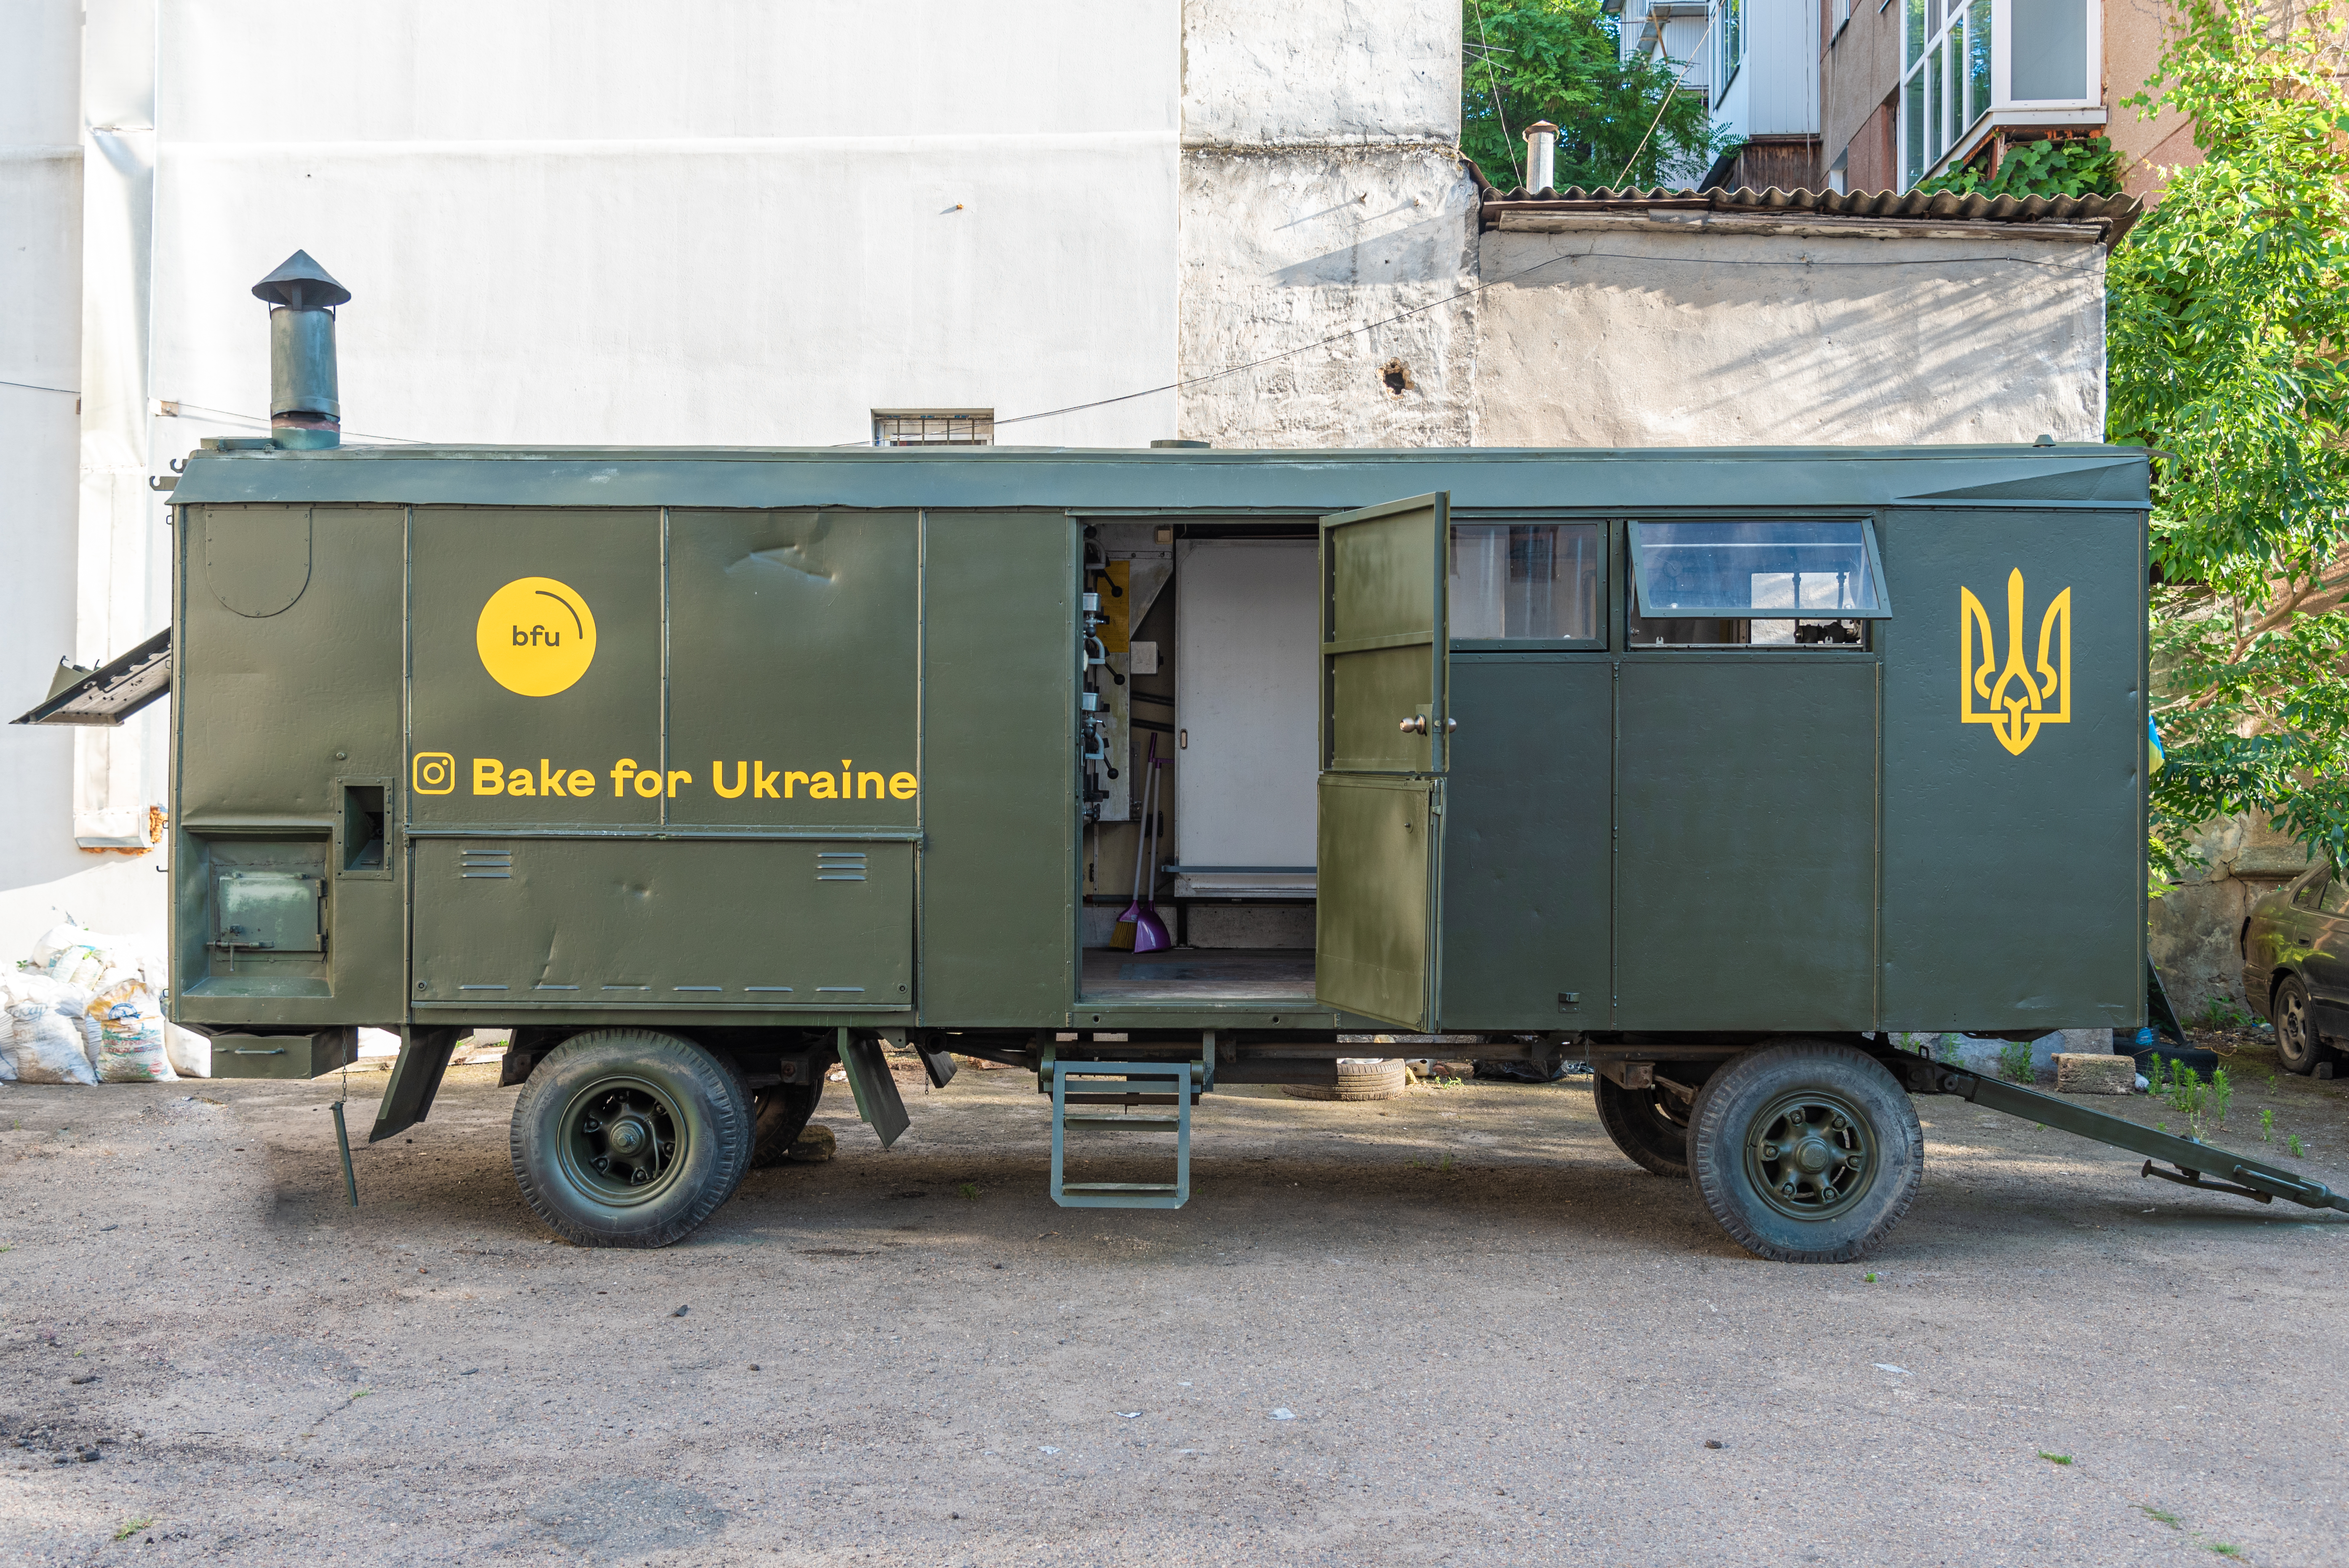 Bake for Ukraine mobile bakery, photo by Oleksandr Baron